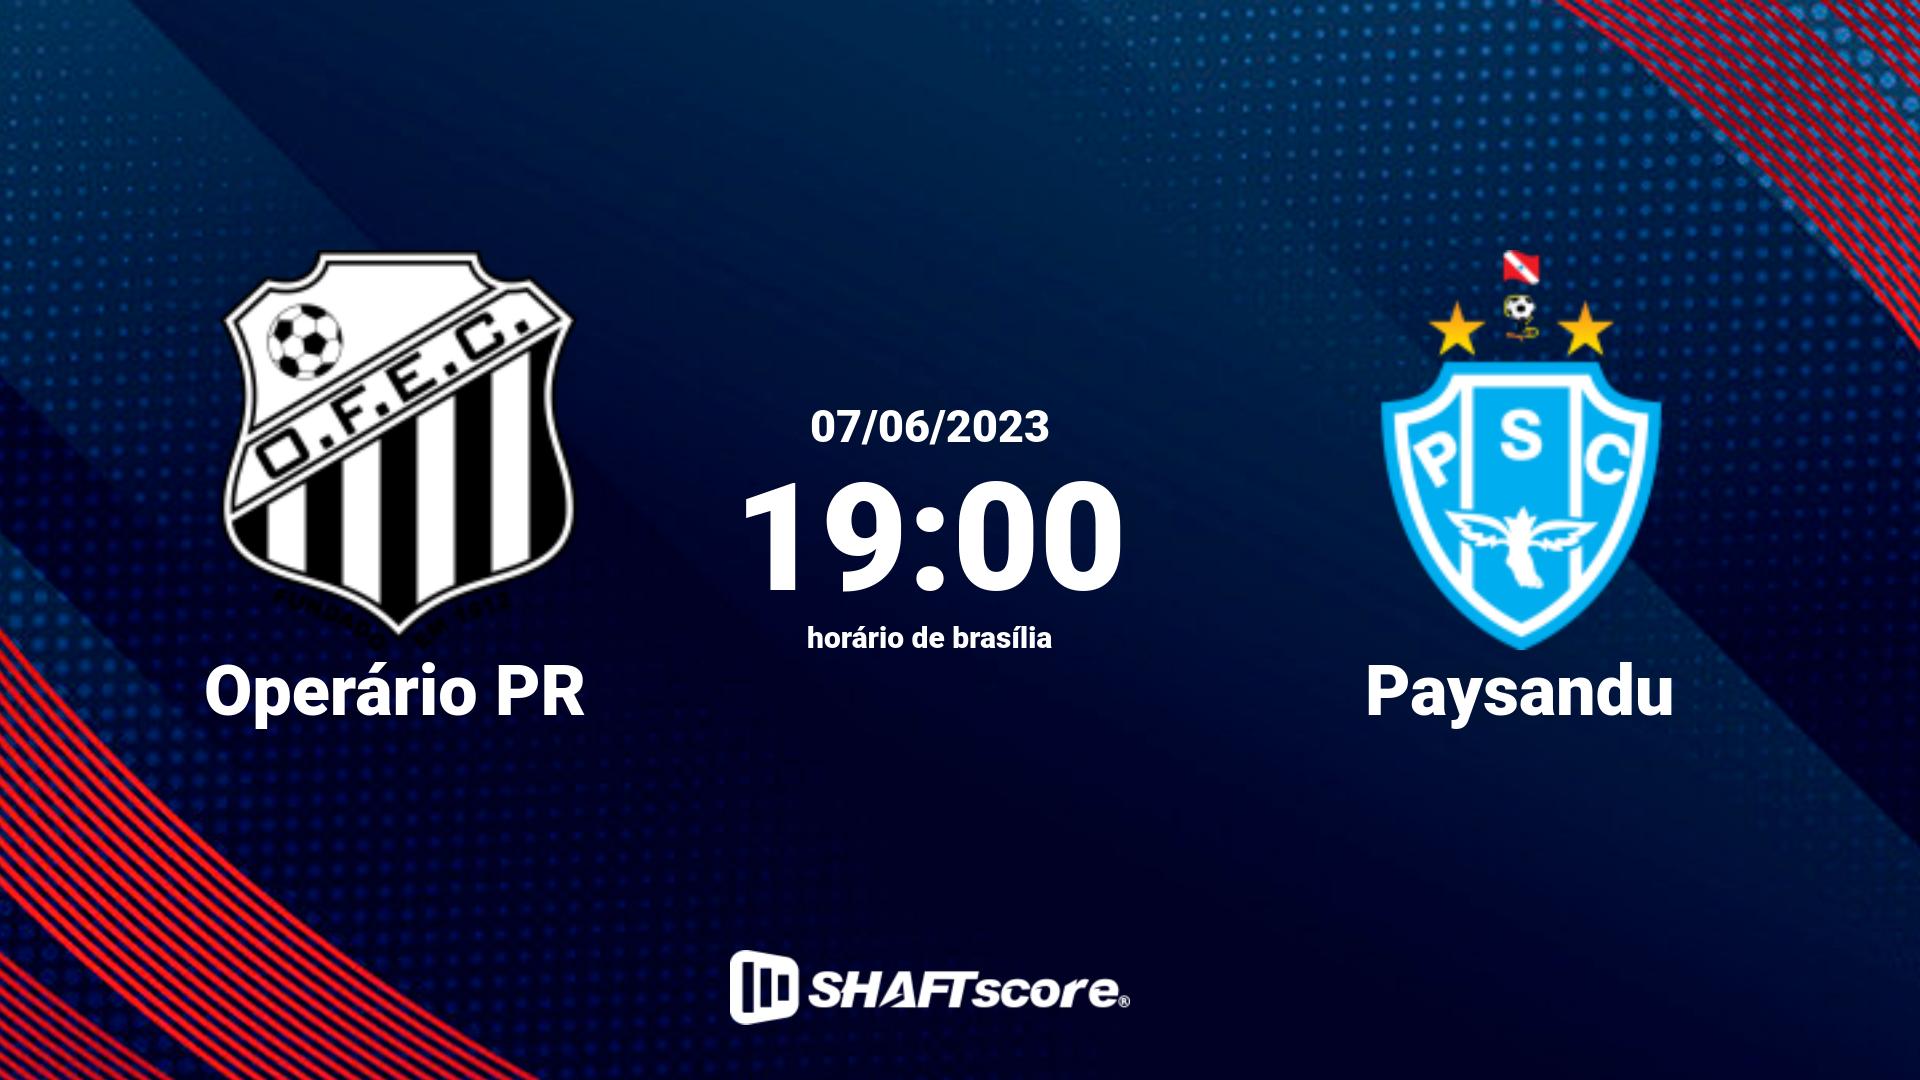 Estatísticas do jogo Operário PR vs Paysandu 07.06 19:00